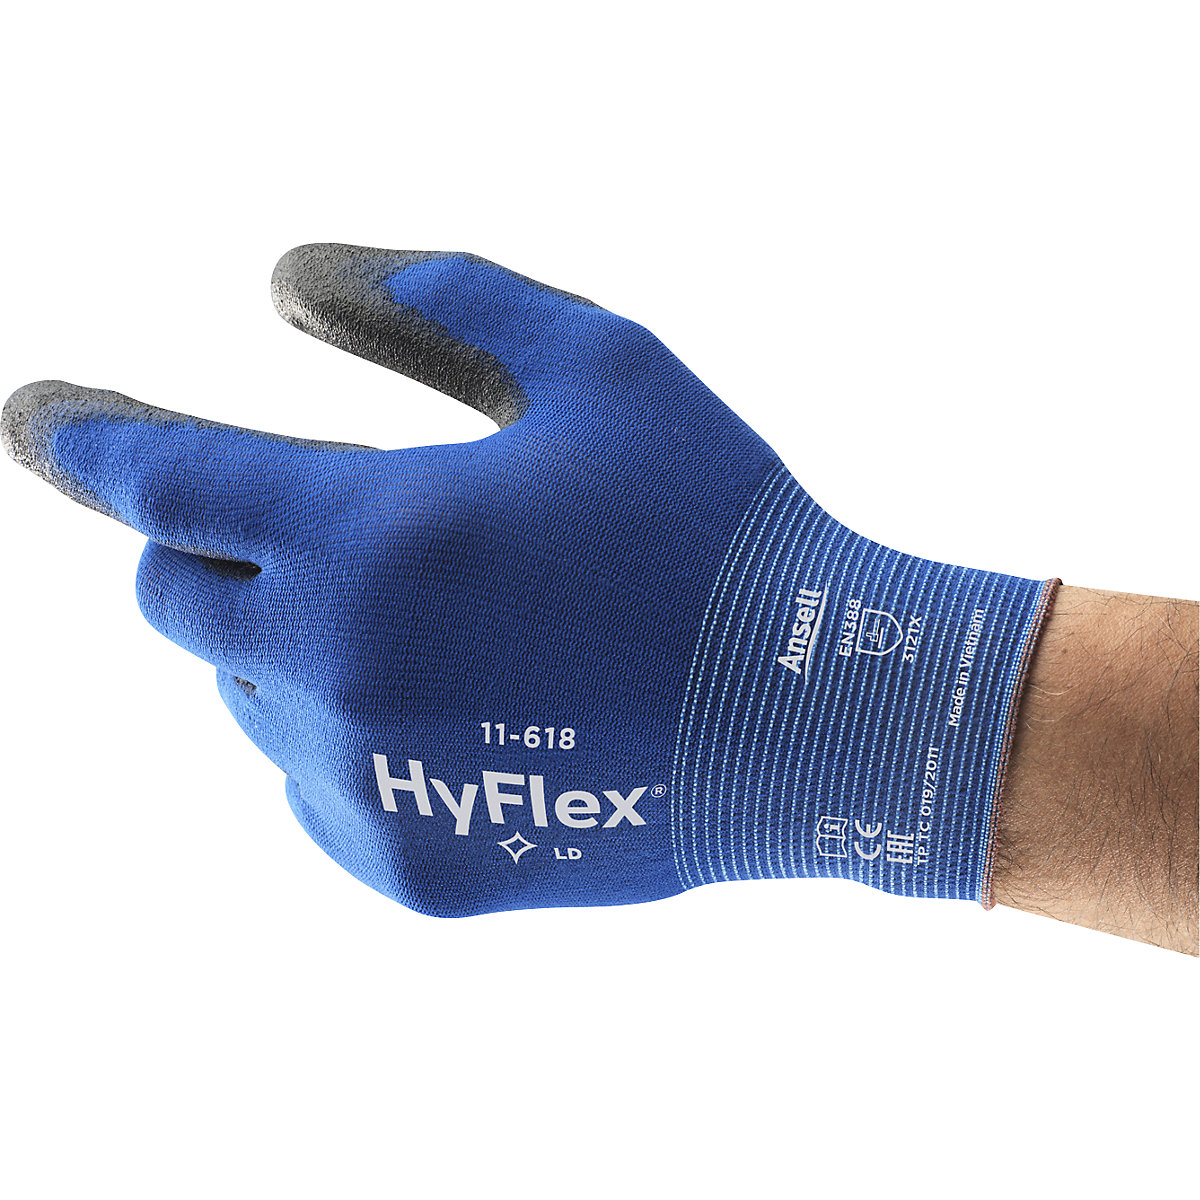 Mănușă de lucru HyFlex® 11-618 – Ansell (Imagine produs 2)-1